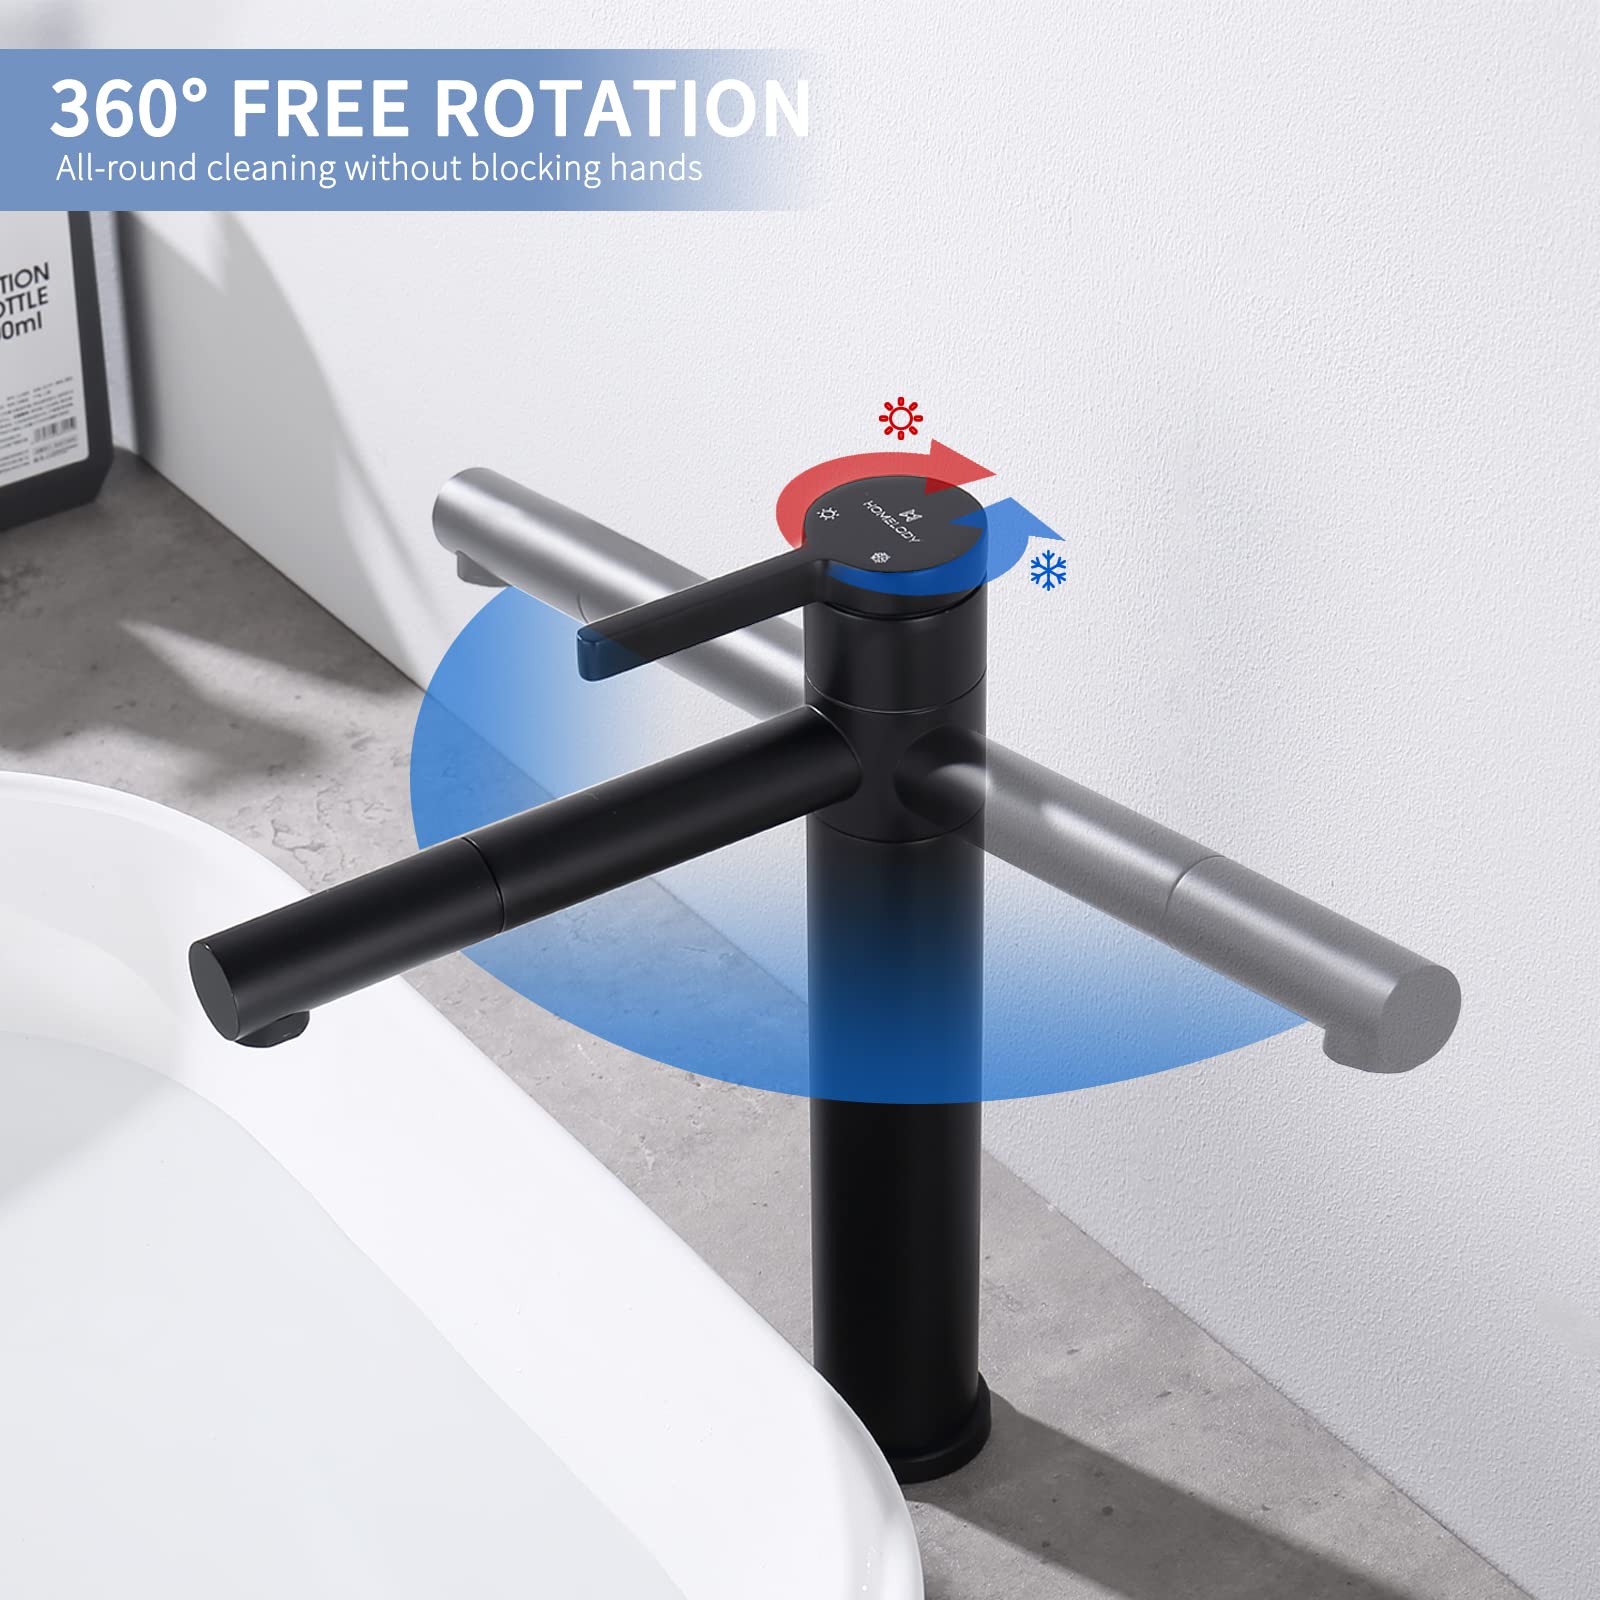 Doppelt 360° drehbar Hohe Waschtischarmatur Chrom Homelody Wasserhahn Bad für Waschbecken im Badezimmer armaturen